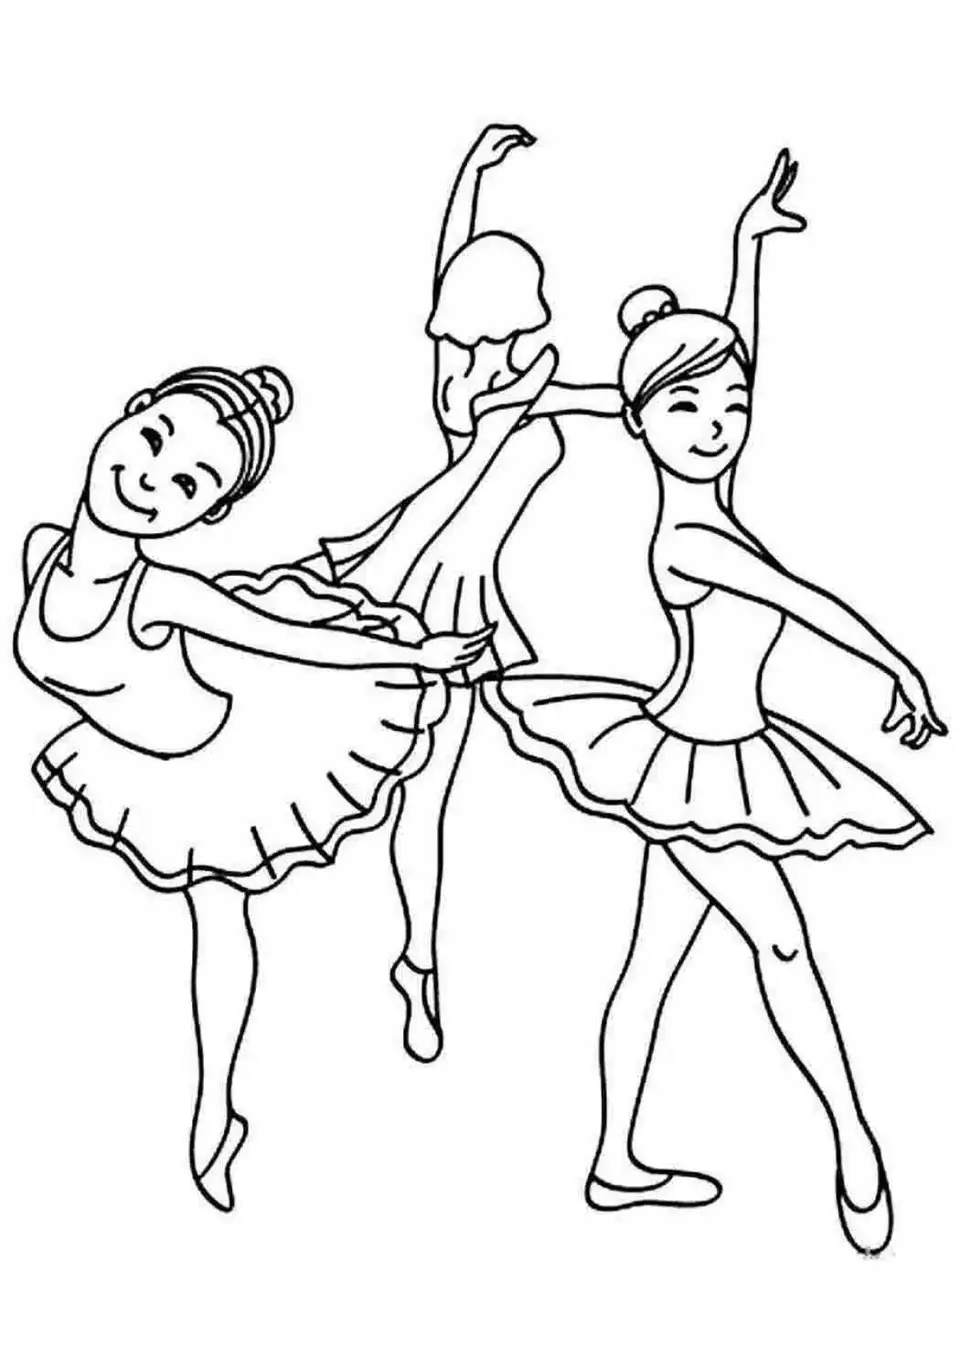 Балерина раскраска для детей